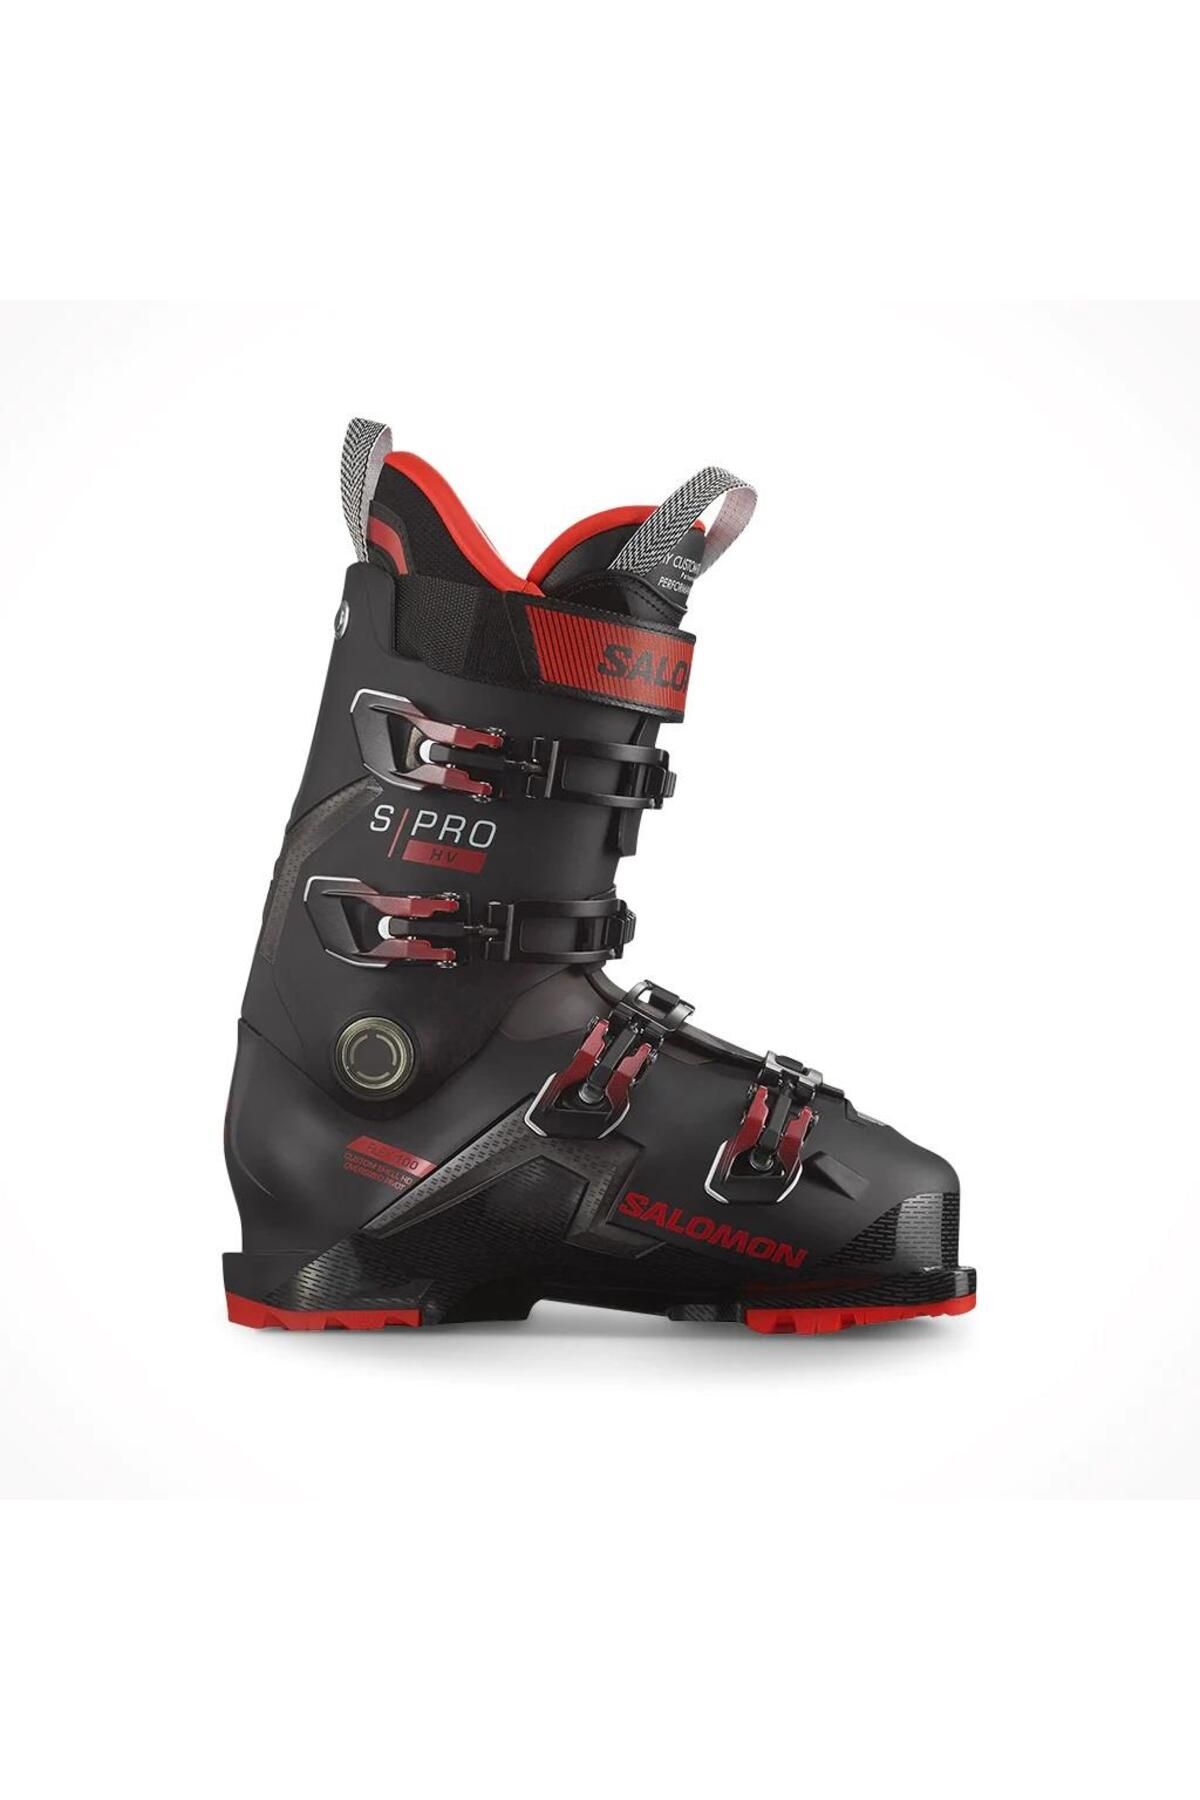 Salomon S/pro Hv 100 Erkek Kayak Ayakkabısı-l4734400002